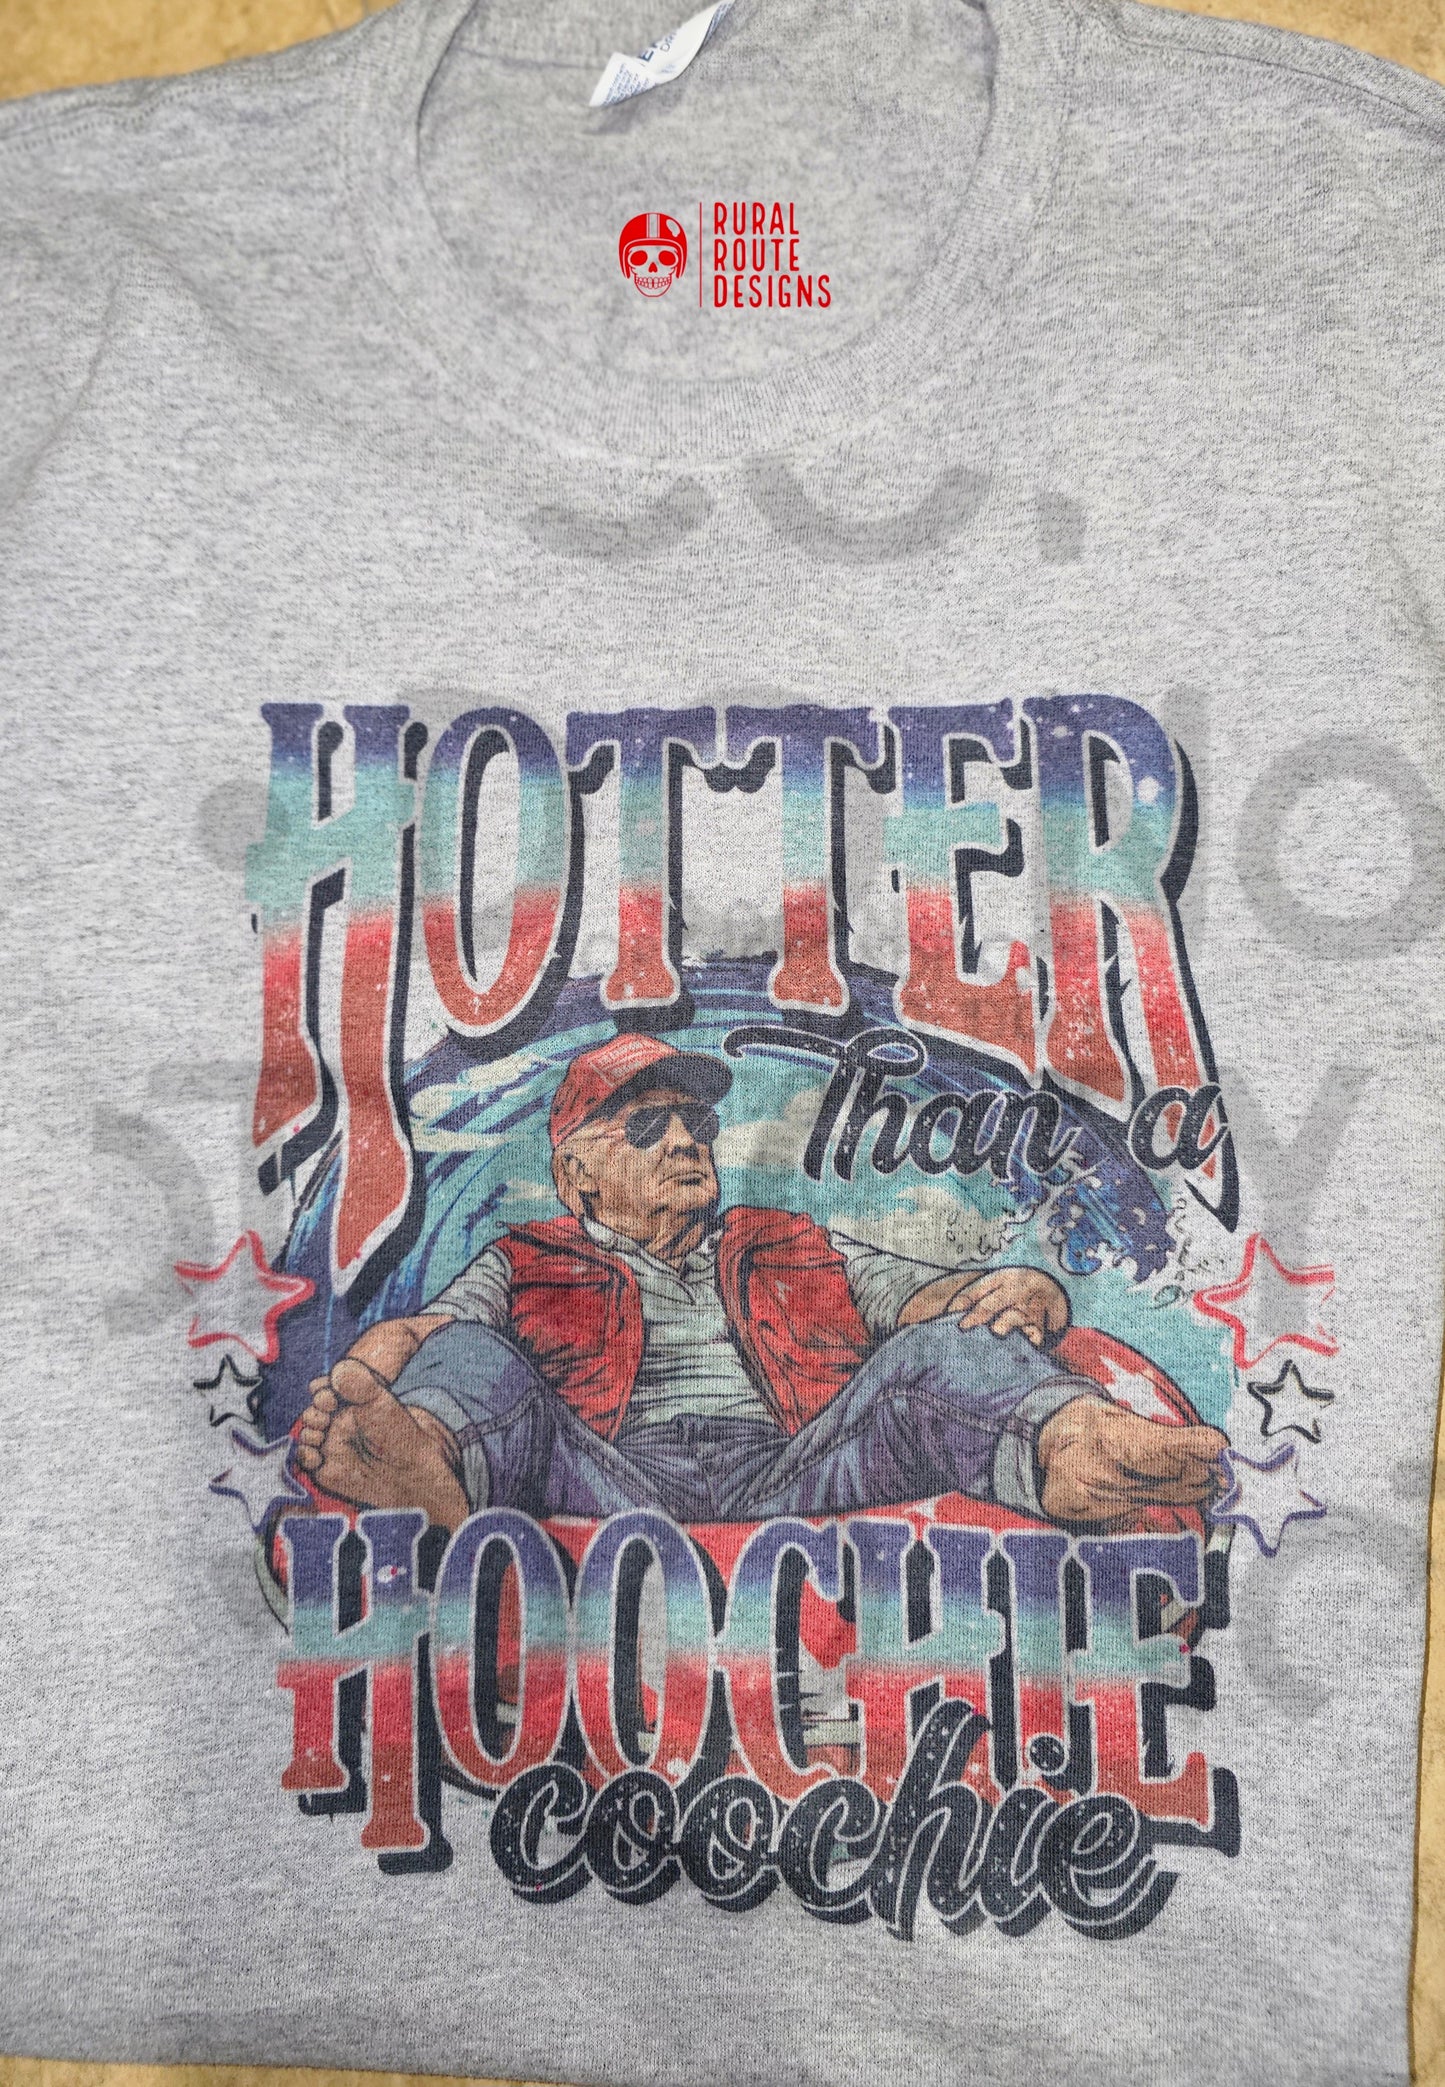 Hotter than T-shirt